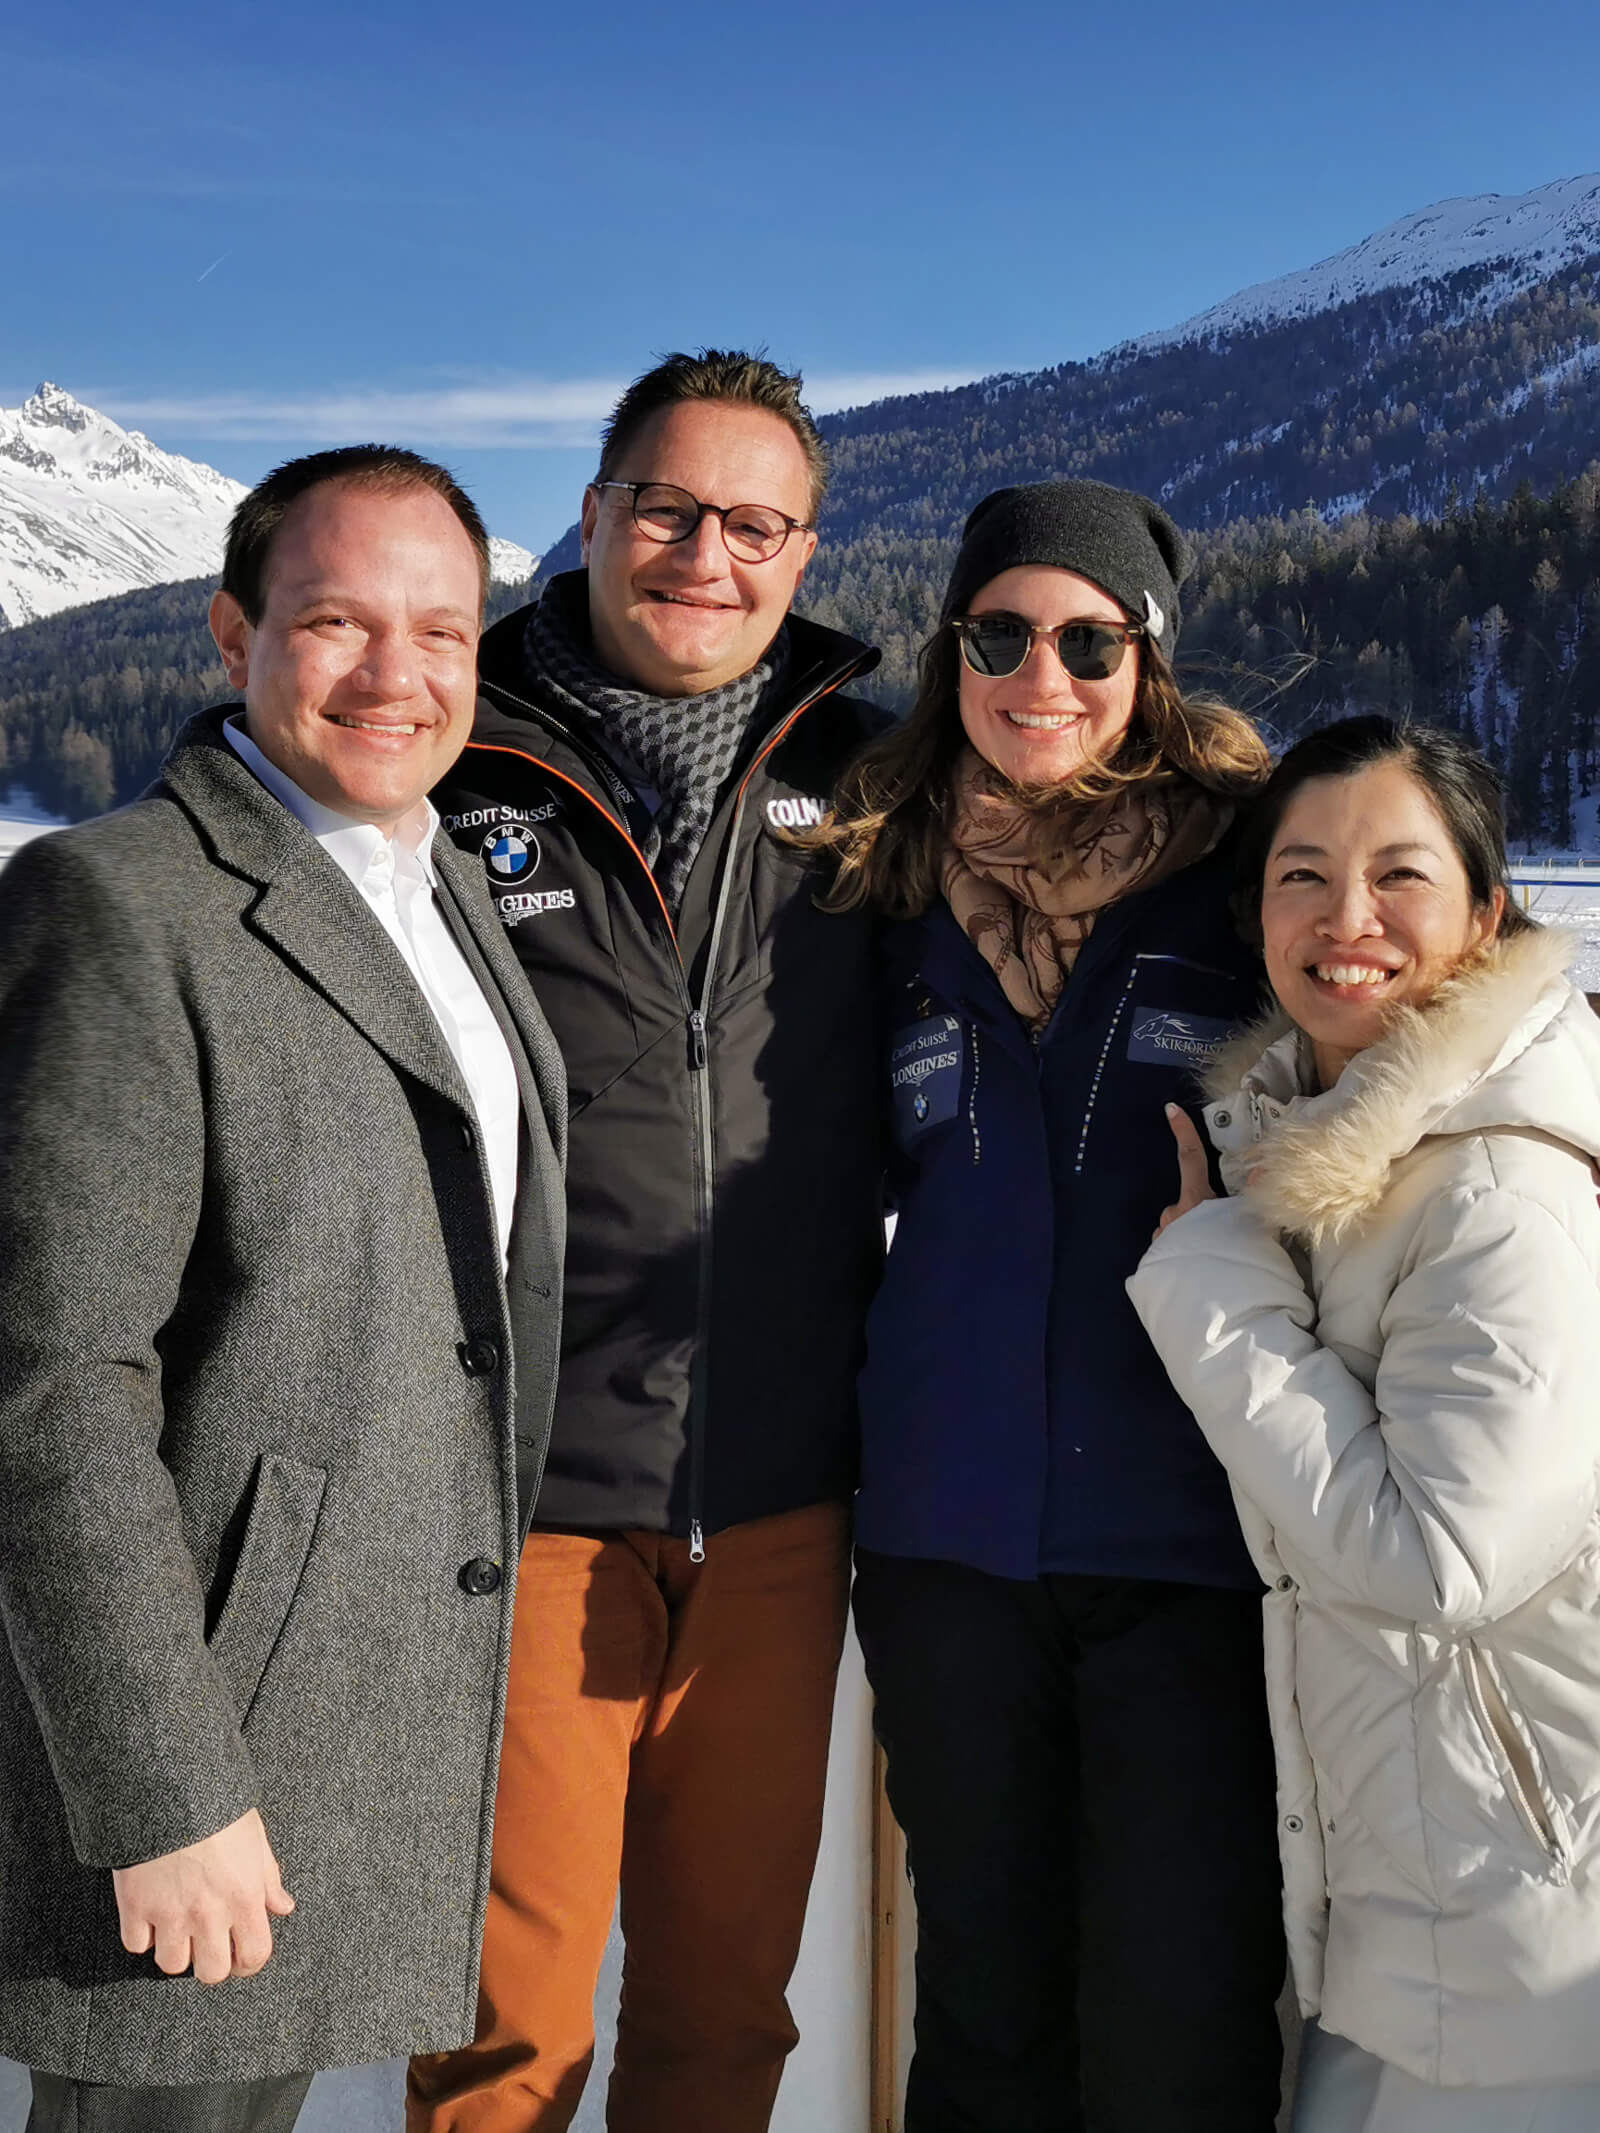 White Turf St. Moritz 2020 - Thomas and Valeria Walther